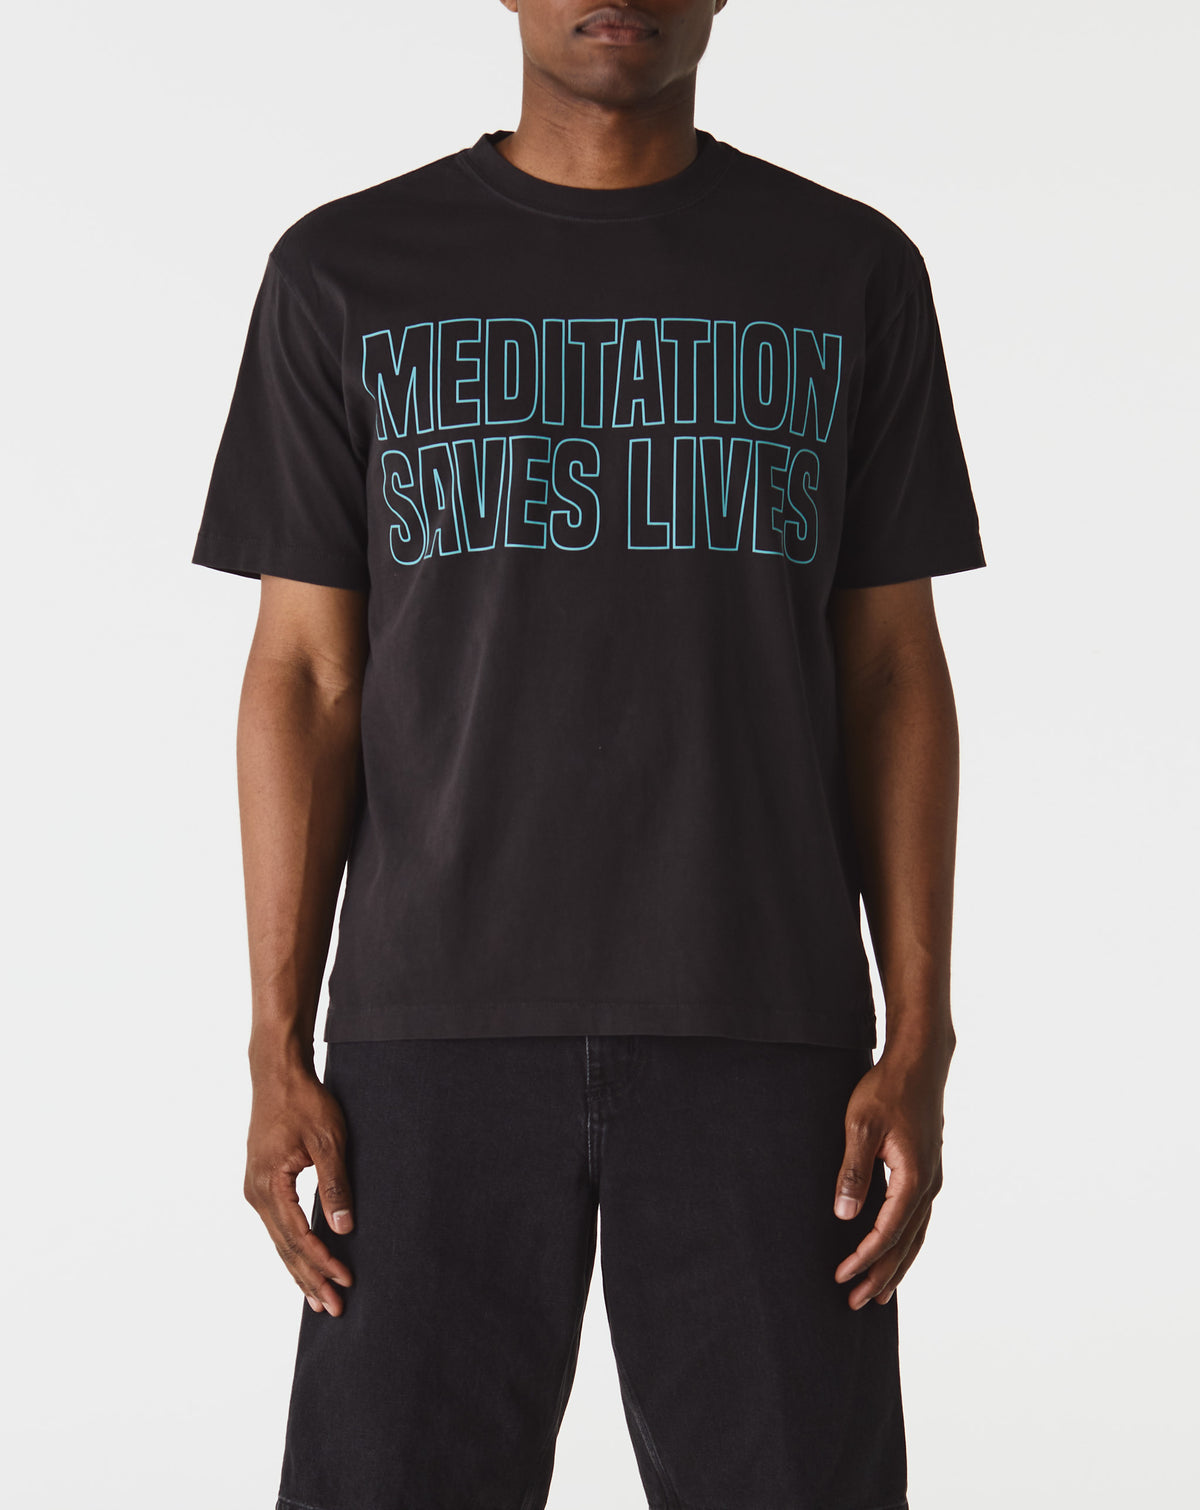 Supervsn Meditation Saves Lives T-Shirt - Rule of Next Apparel